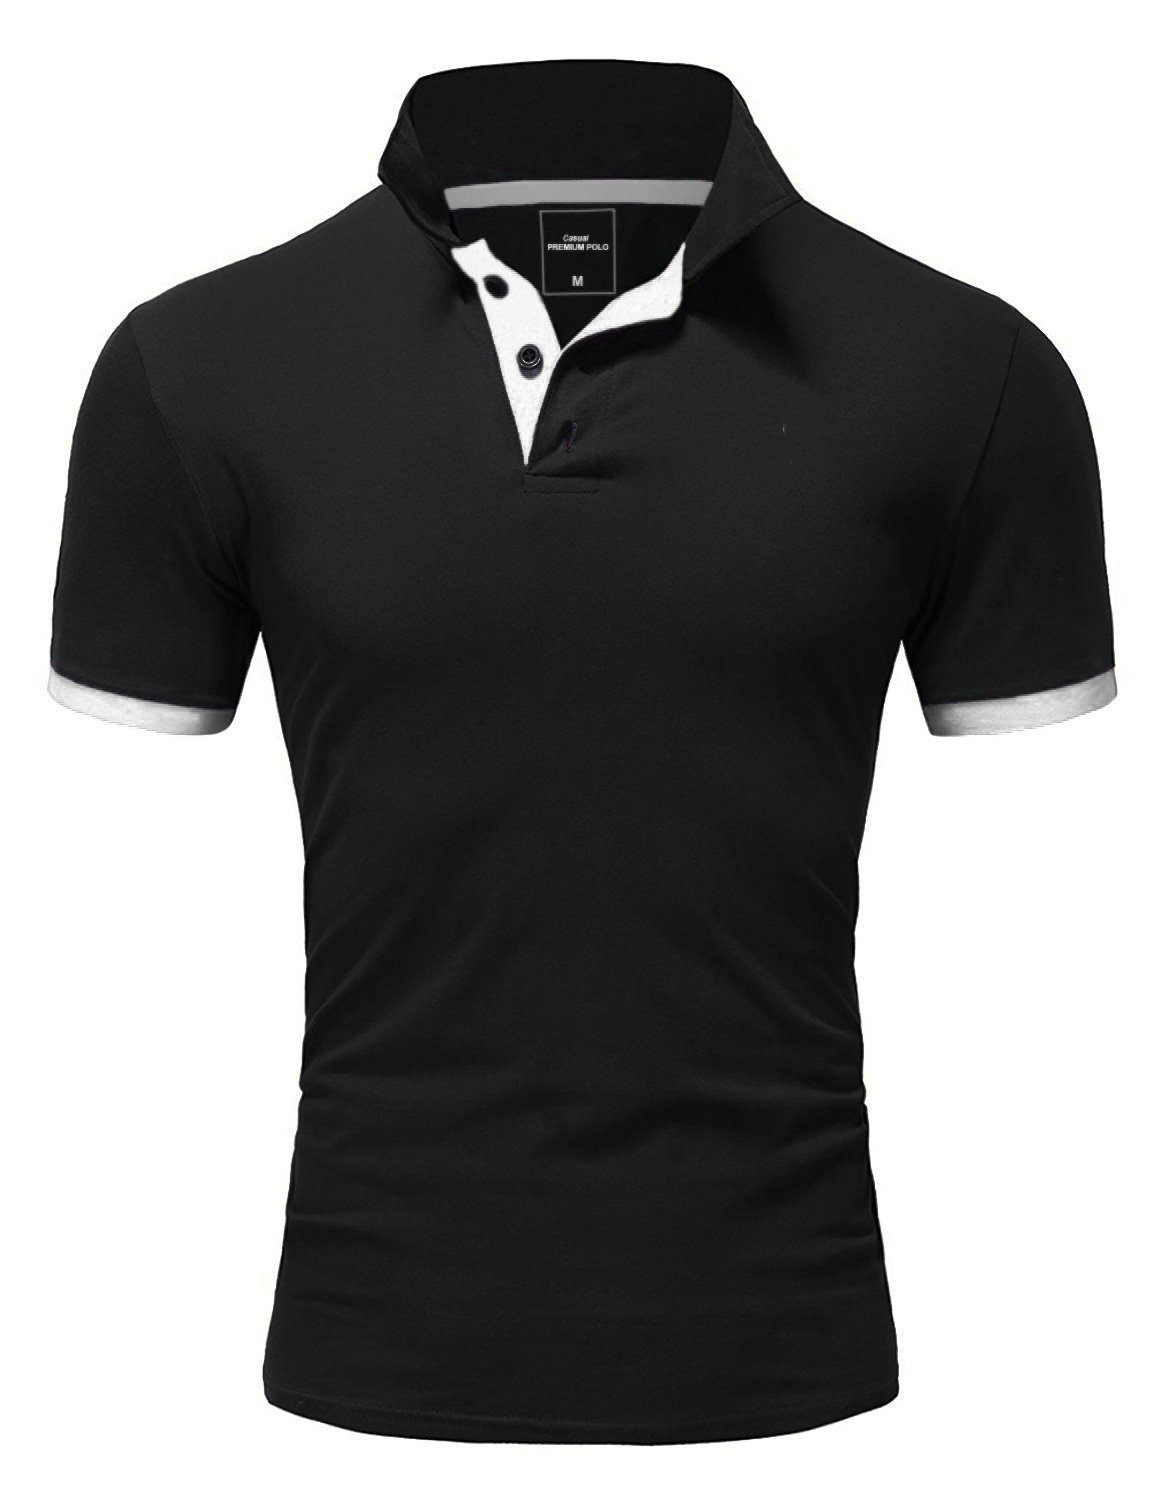 REPUBLIX Poloshirt RONALD Herren Shirt Akzenten, Qualität Schwarz/Weiß kontrastierenden Piqué mit in